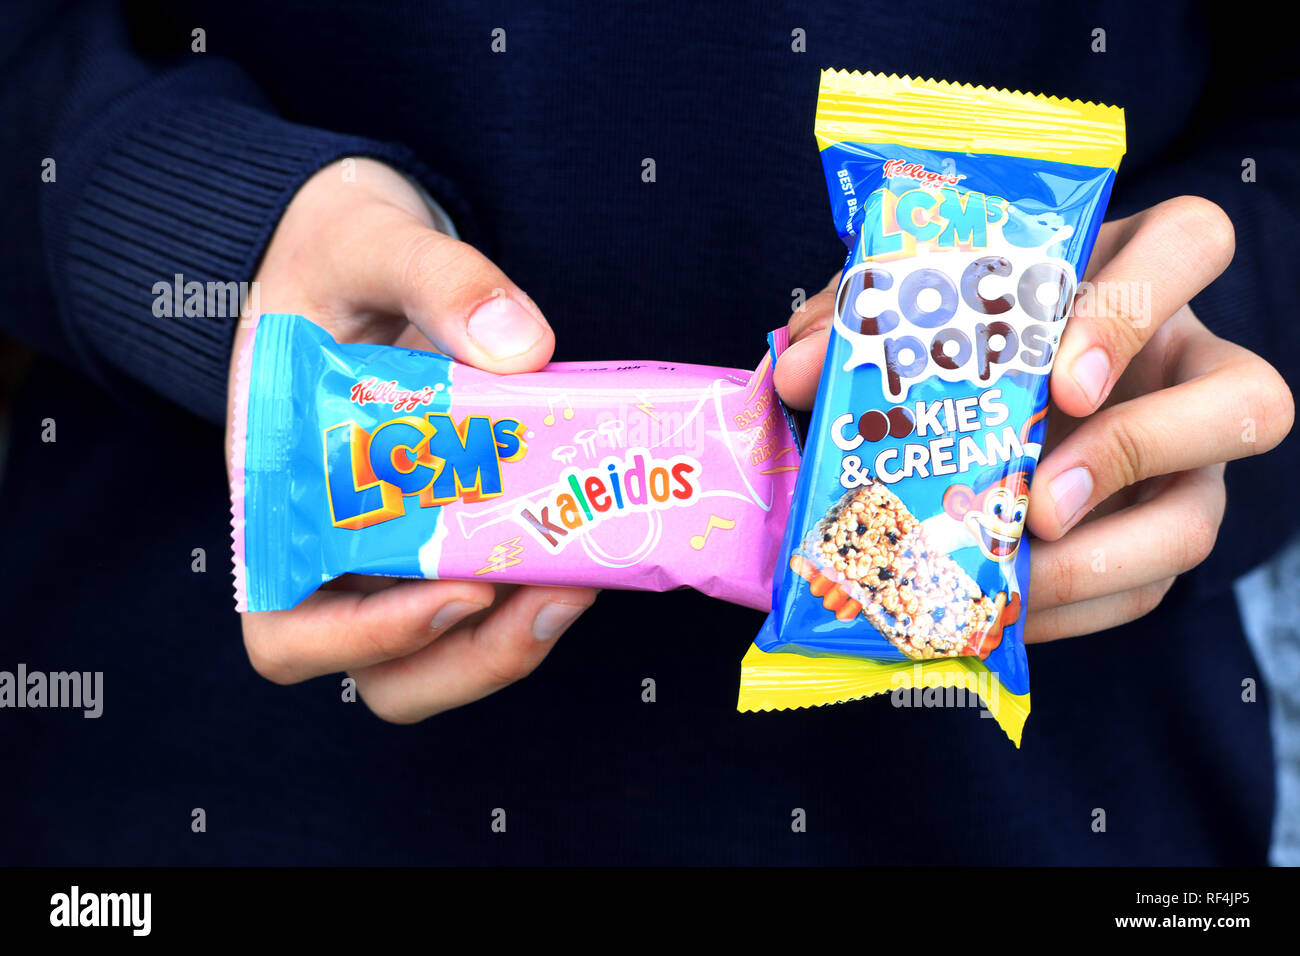 LCM's Kaleidos e coco pops biscotti e crema isolato su sfondo nero Foto Stock